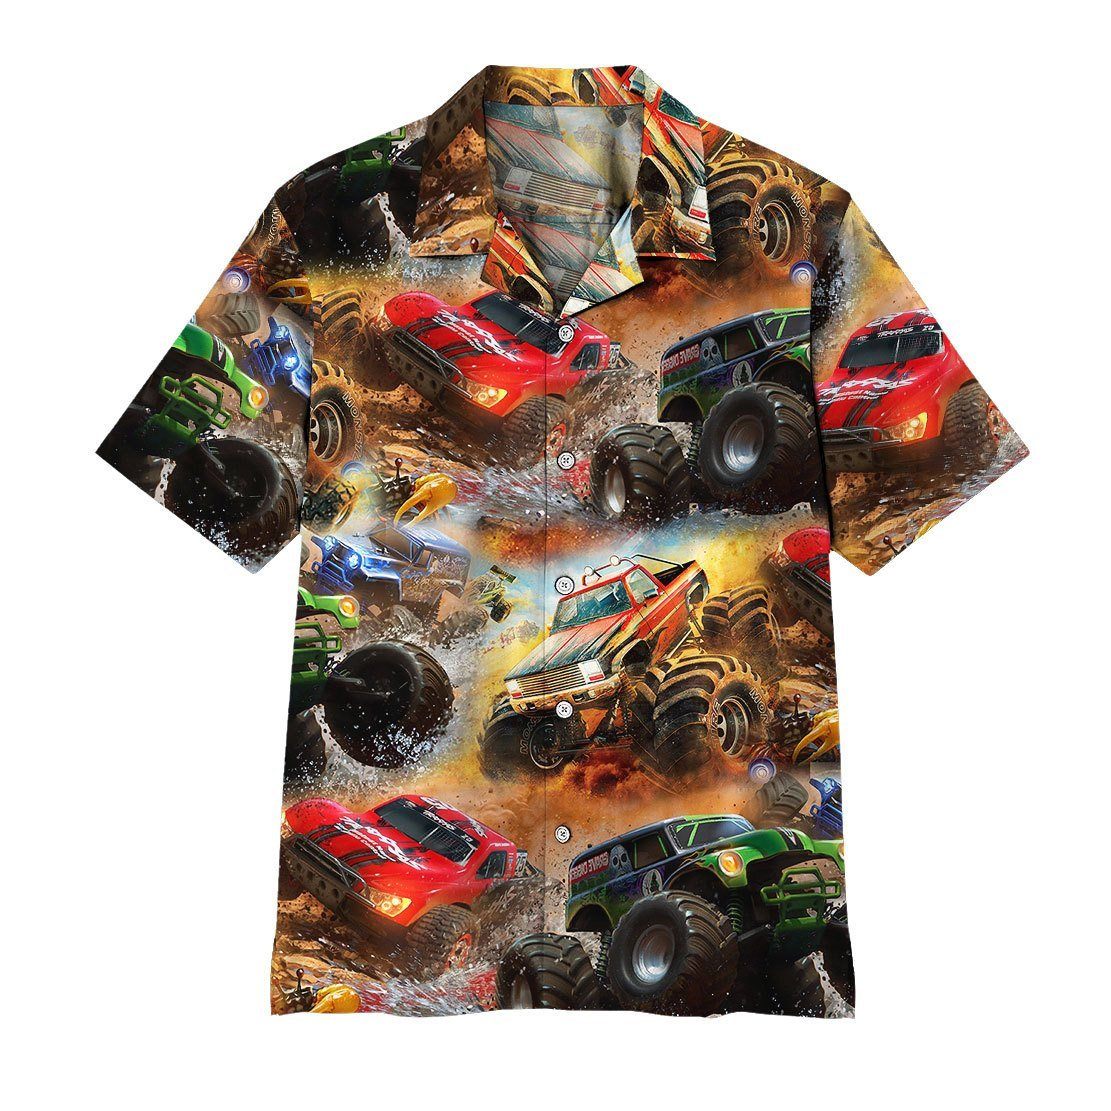 Gearhuman 3D Monster Truck Hawaii Shirt ZK1106219 Hawai Shirt Short Sleeve Shirt S 